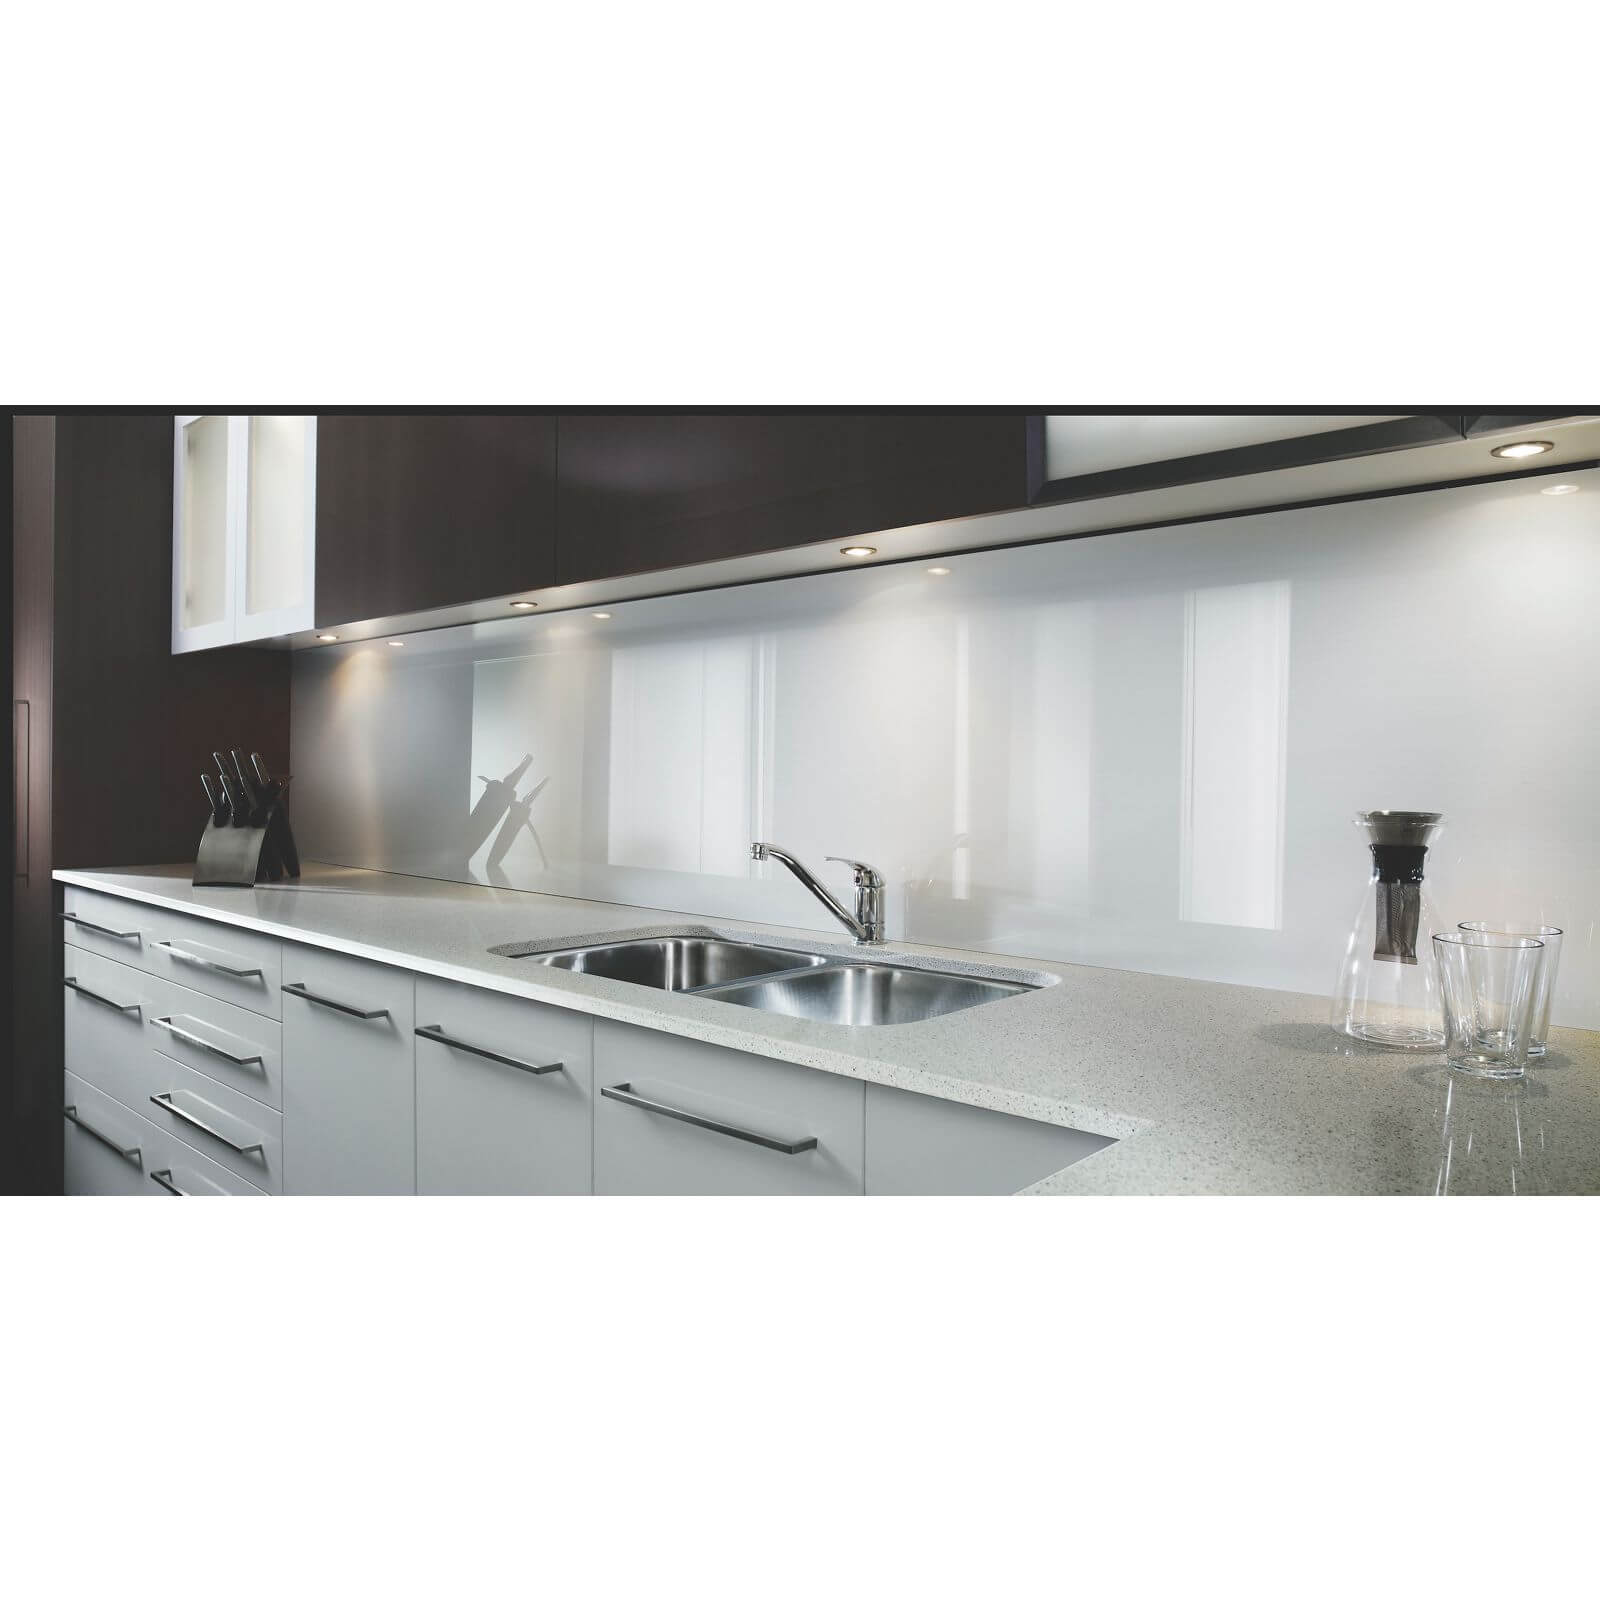 Zenolite Acrylic Kitchen Splashback Panel - 2440 x 605 x 4mm - White